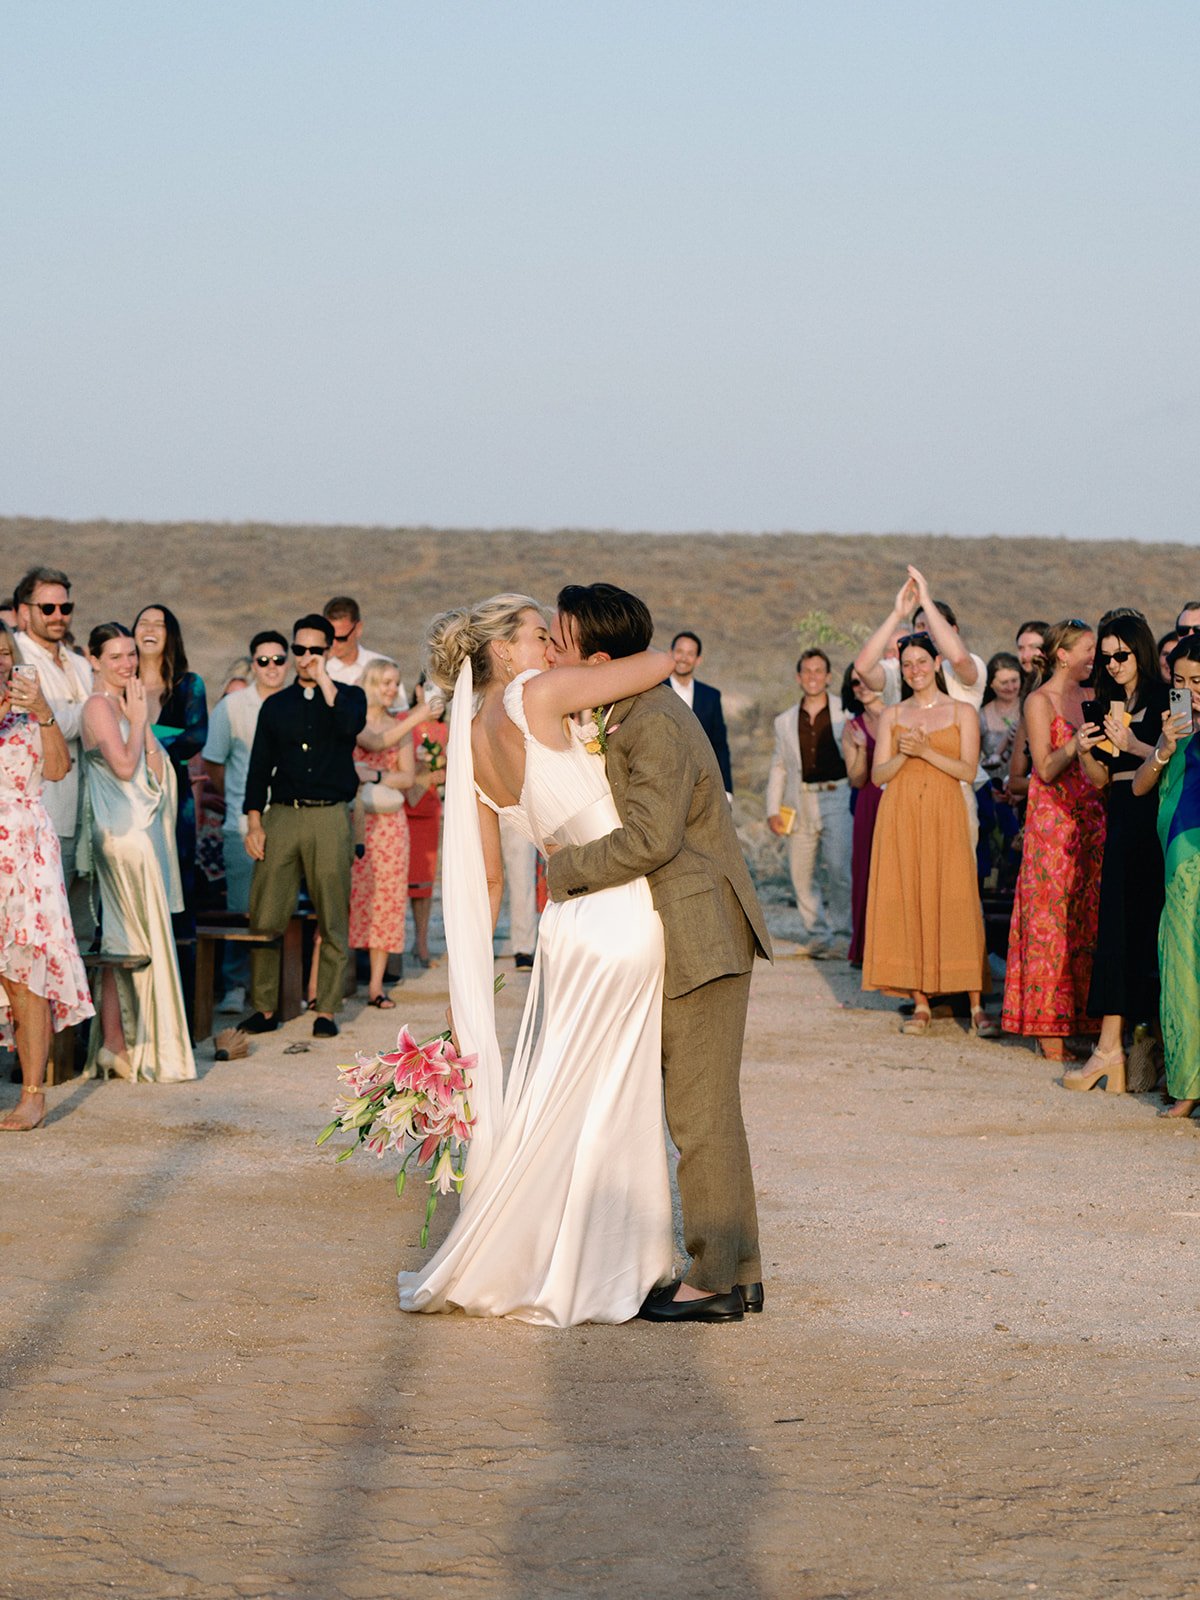 Best-Todos-Santos-Wedding-Photographer-Baja-El Mirador-La Bohemia-35mm-Film-Austin-Mexico-141.jpg